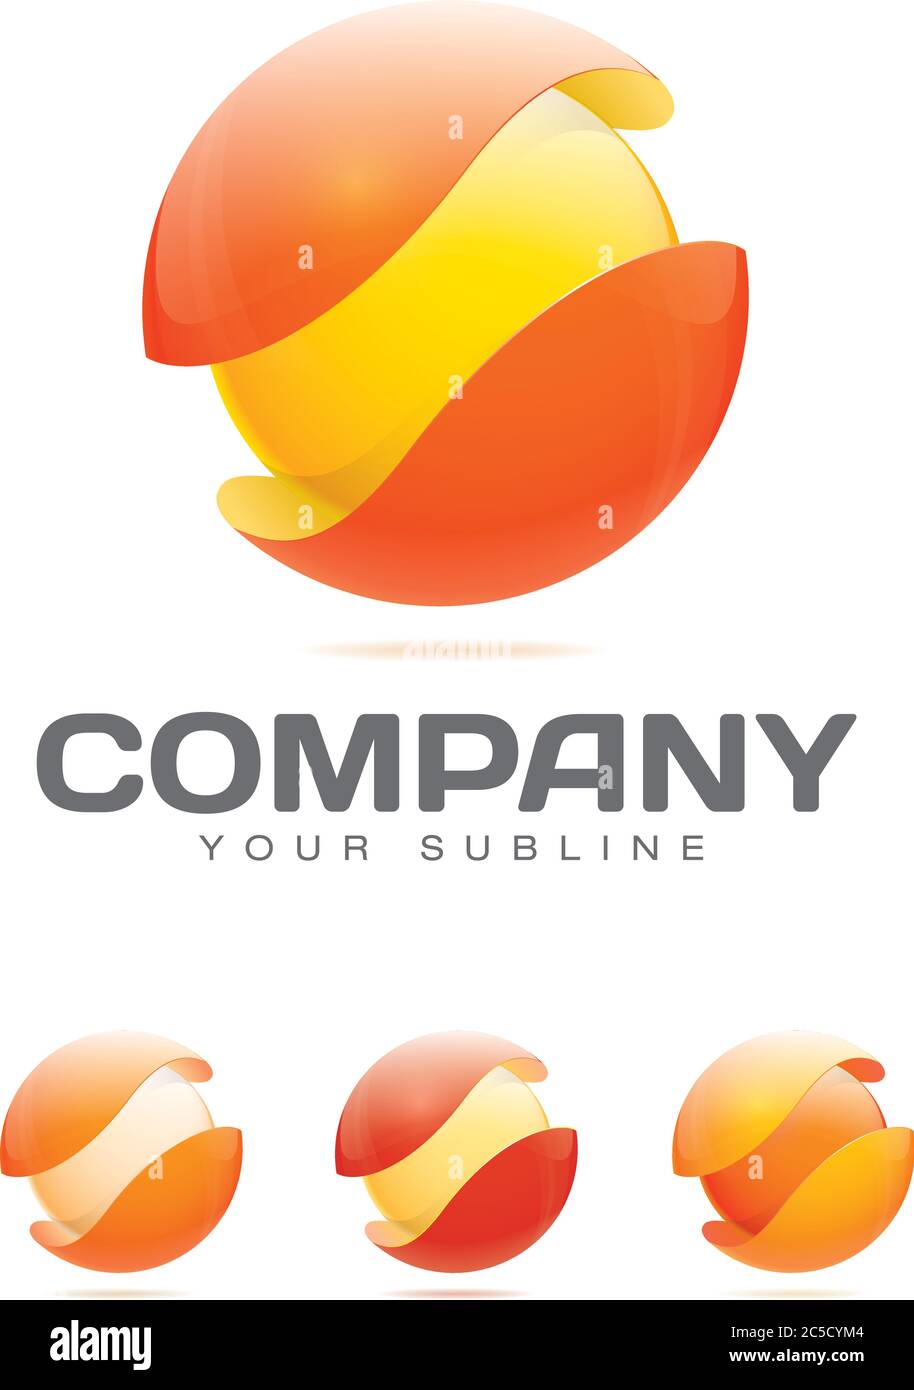 Modello astratto del logo aziendale - sfera in shell protettivo. Variazioni di colore giallo, rosso e arancione Illustrazione Vettoriale